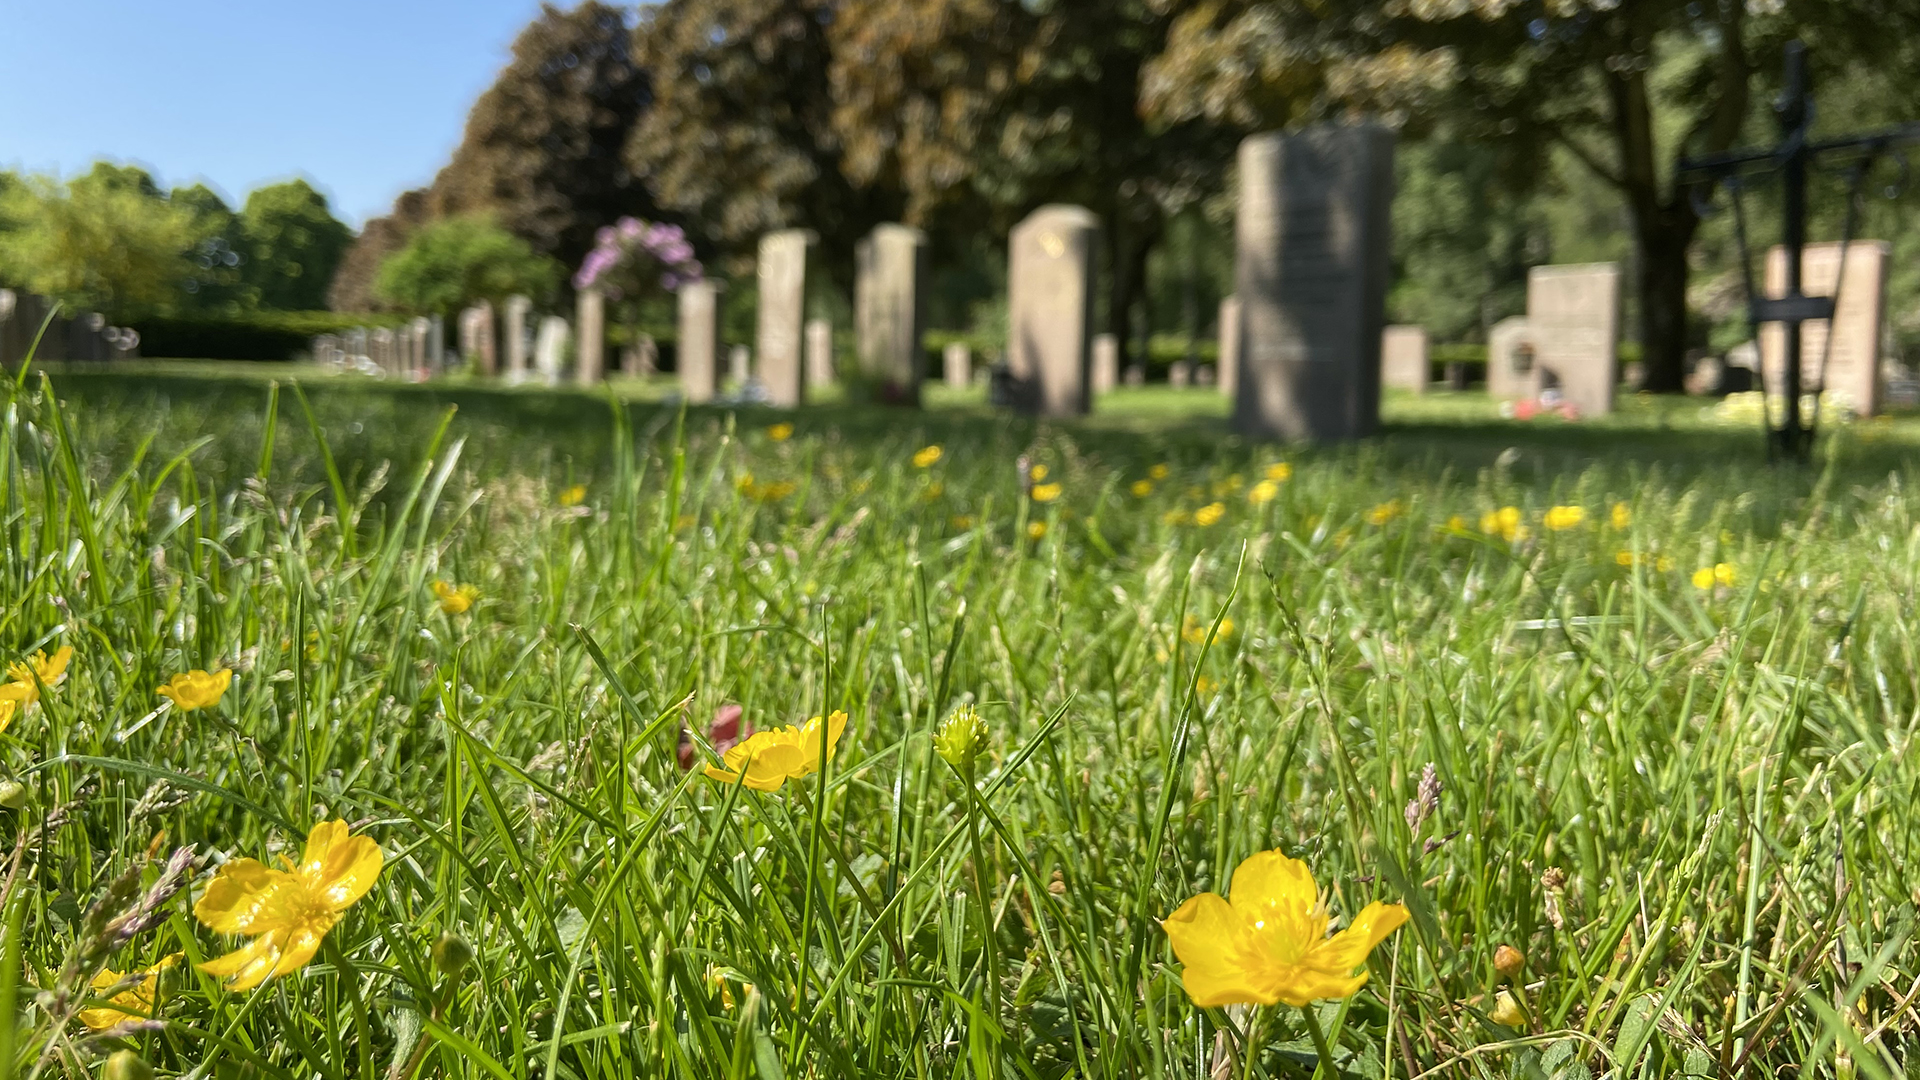 Smörblommor i grönt gräs med gravstenar i bakgrunden